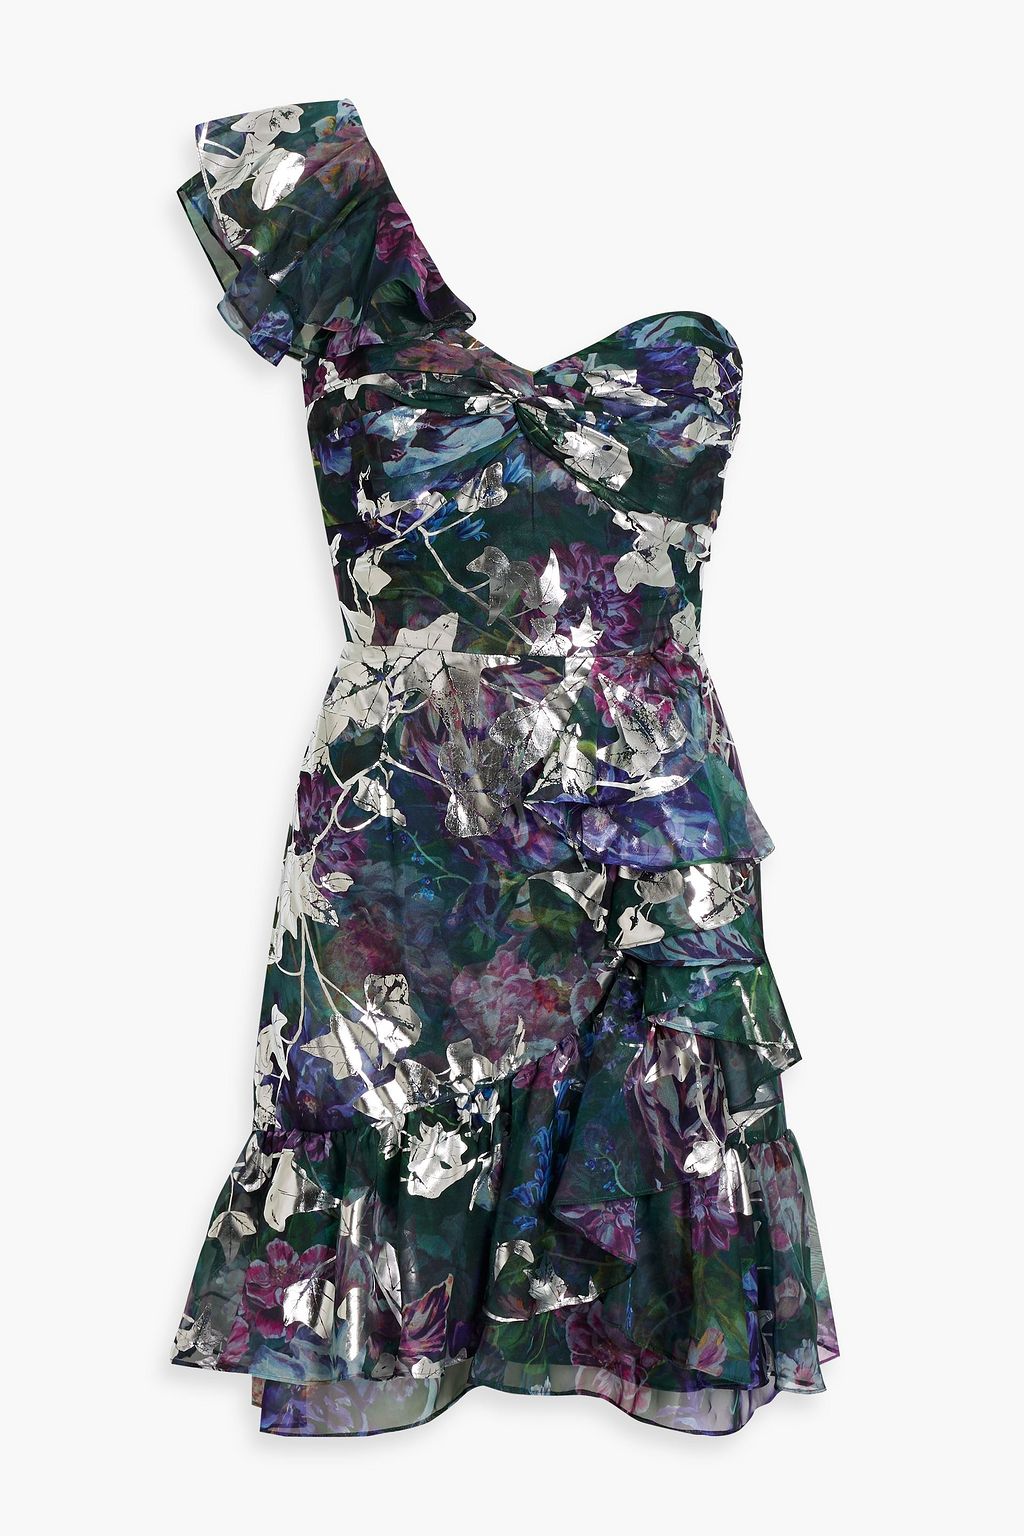 Шифоновое мини-платье на одно плечо с металлизированным цветочным принтом MARCHESA NOTTE, изумрудный